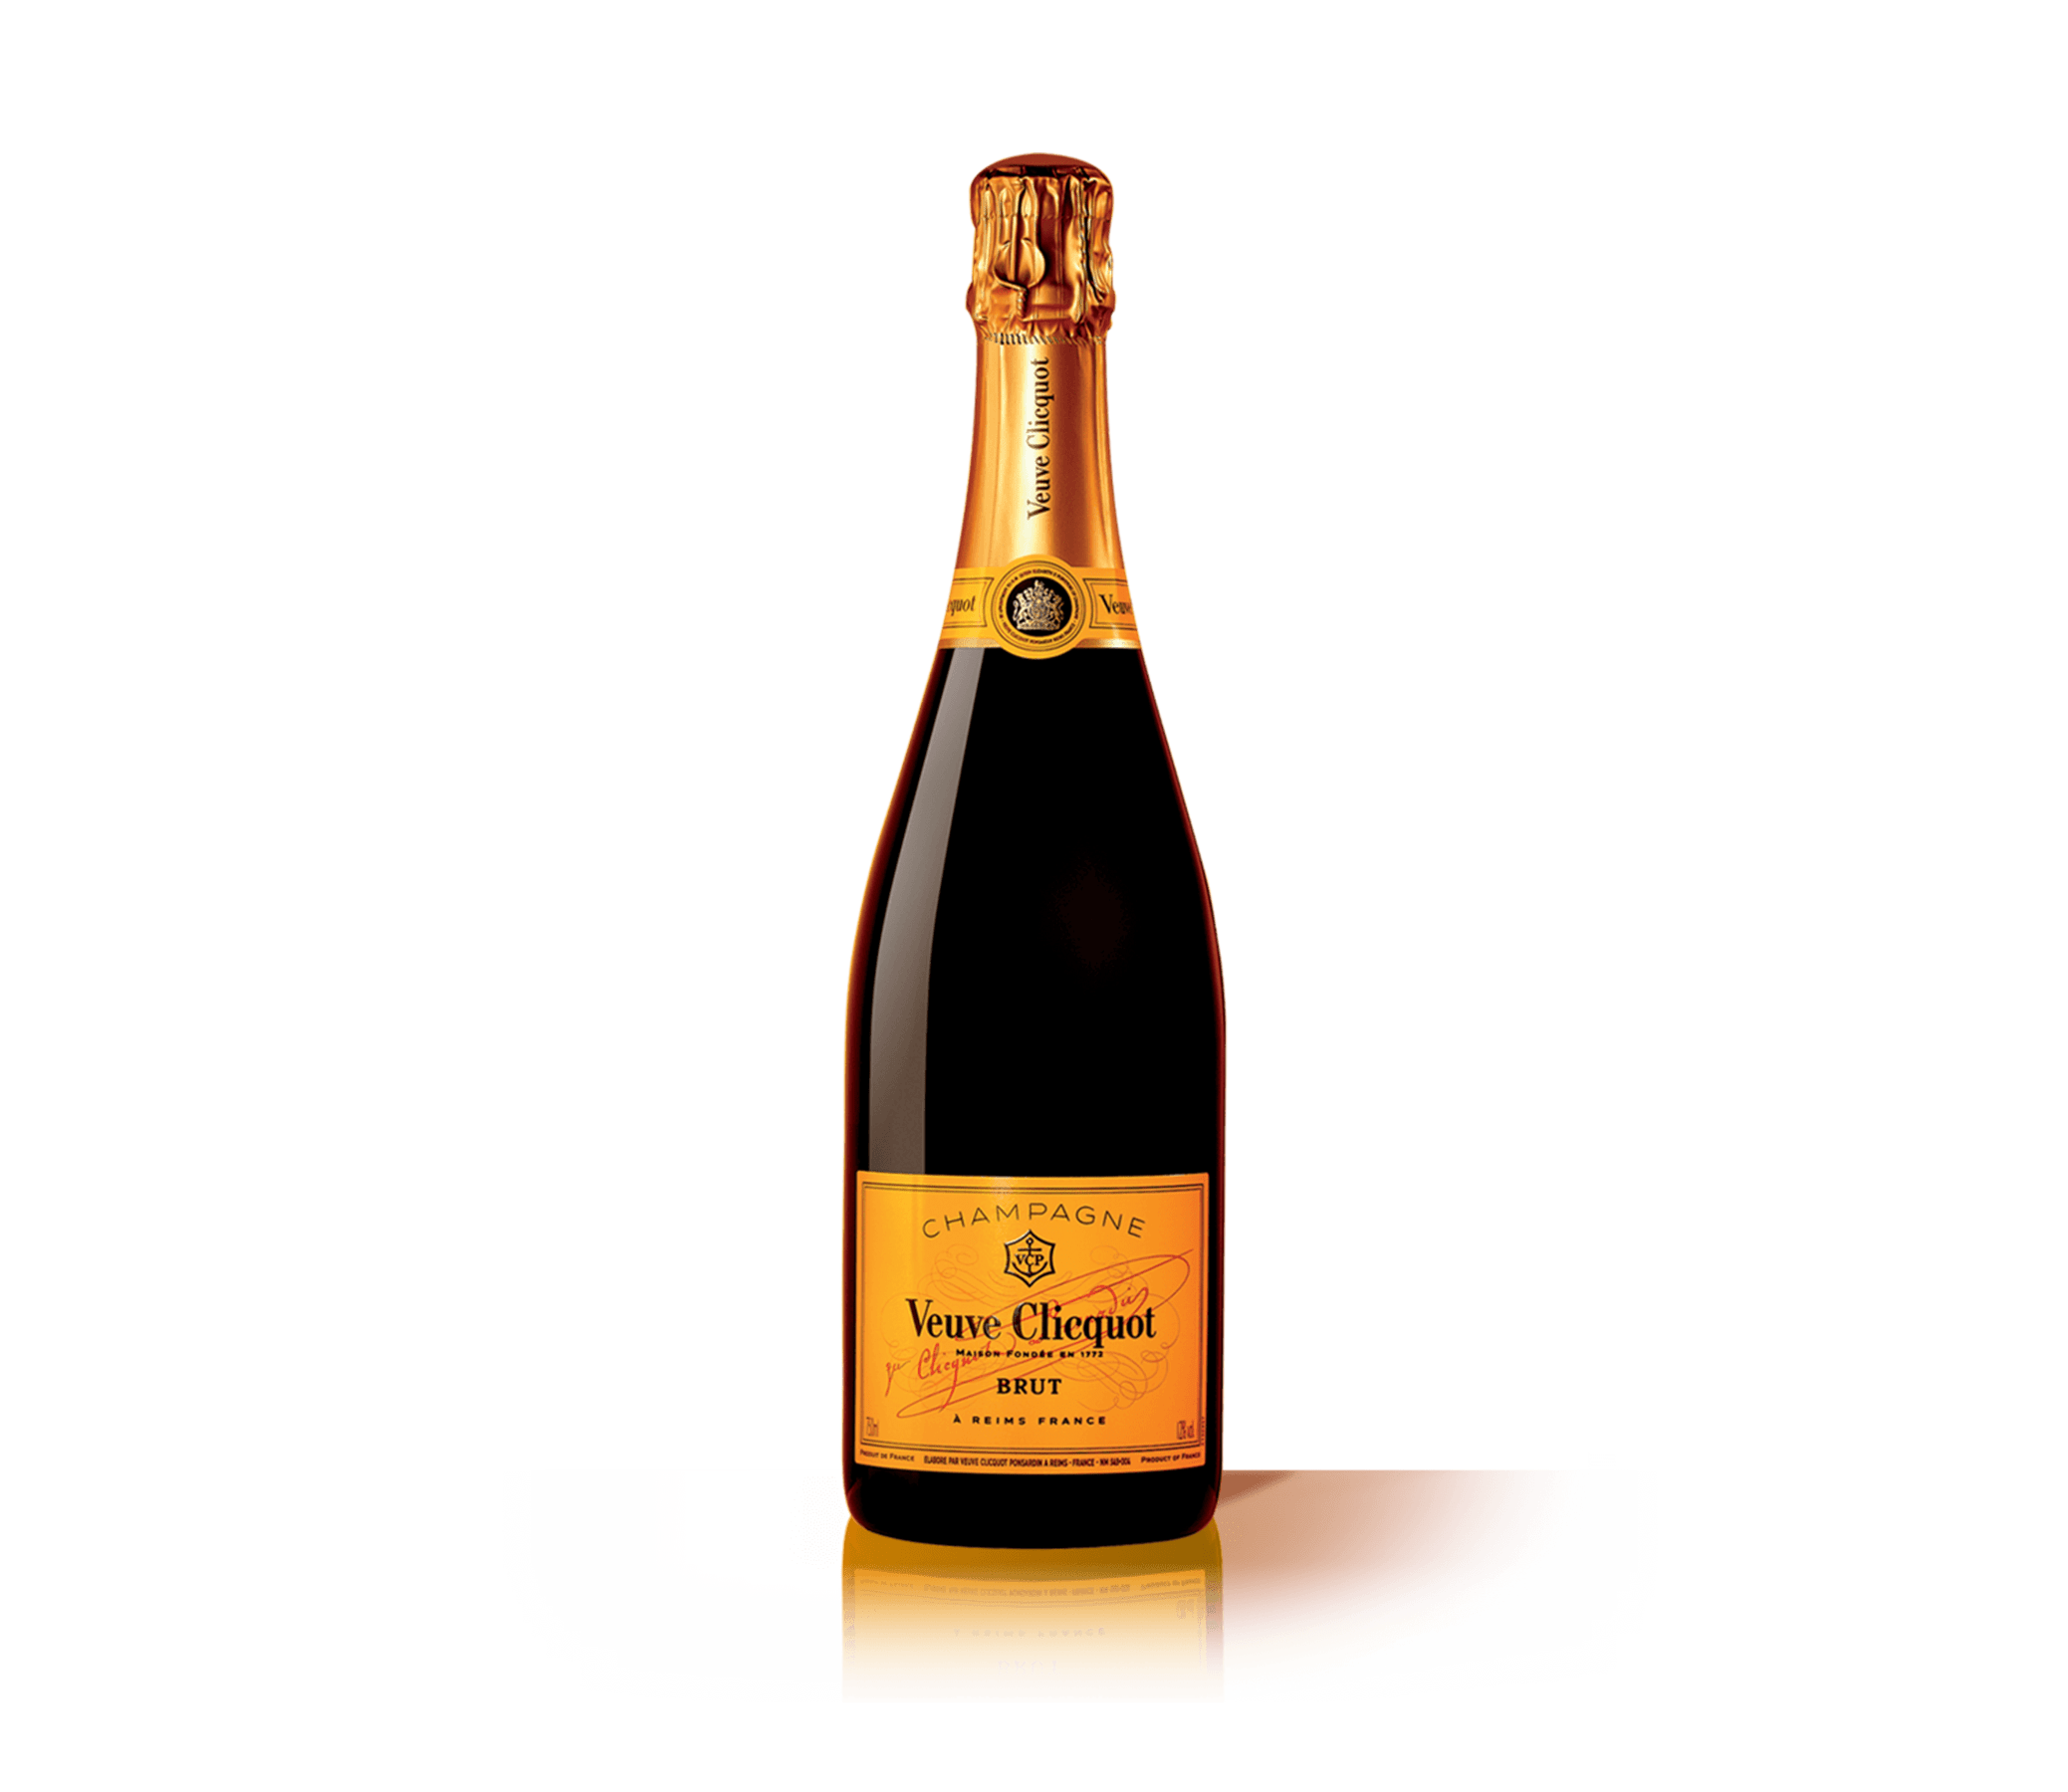 Шампанское classic. Шампанское Veuve Clicquot Rose 2008 0.75 л. Игристое вино французское AOP Champagne Veuve Clicquot Brut 0.75 l. Veuve Clicquot Brut 0.75 л. Шампанское "Veuve Clicquot Ponsardin" (вдова Клико Понсардин).